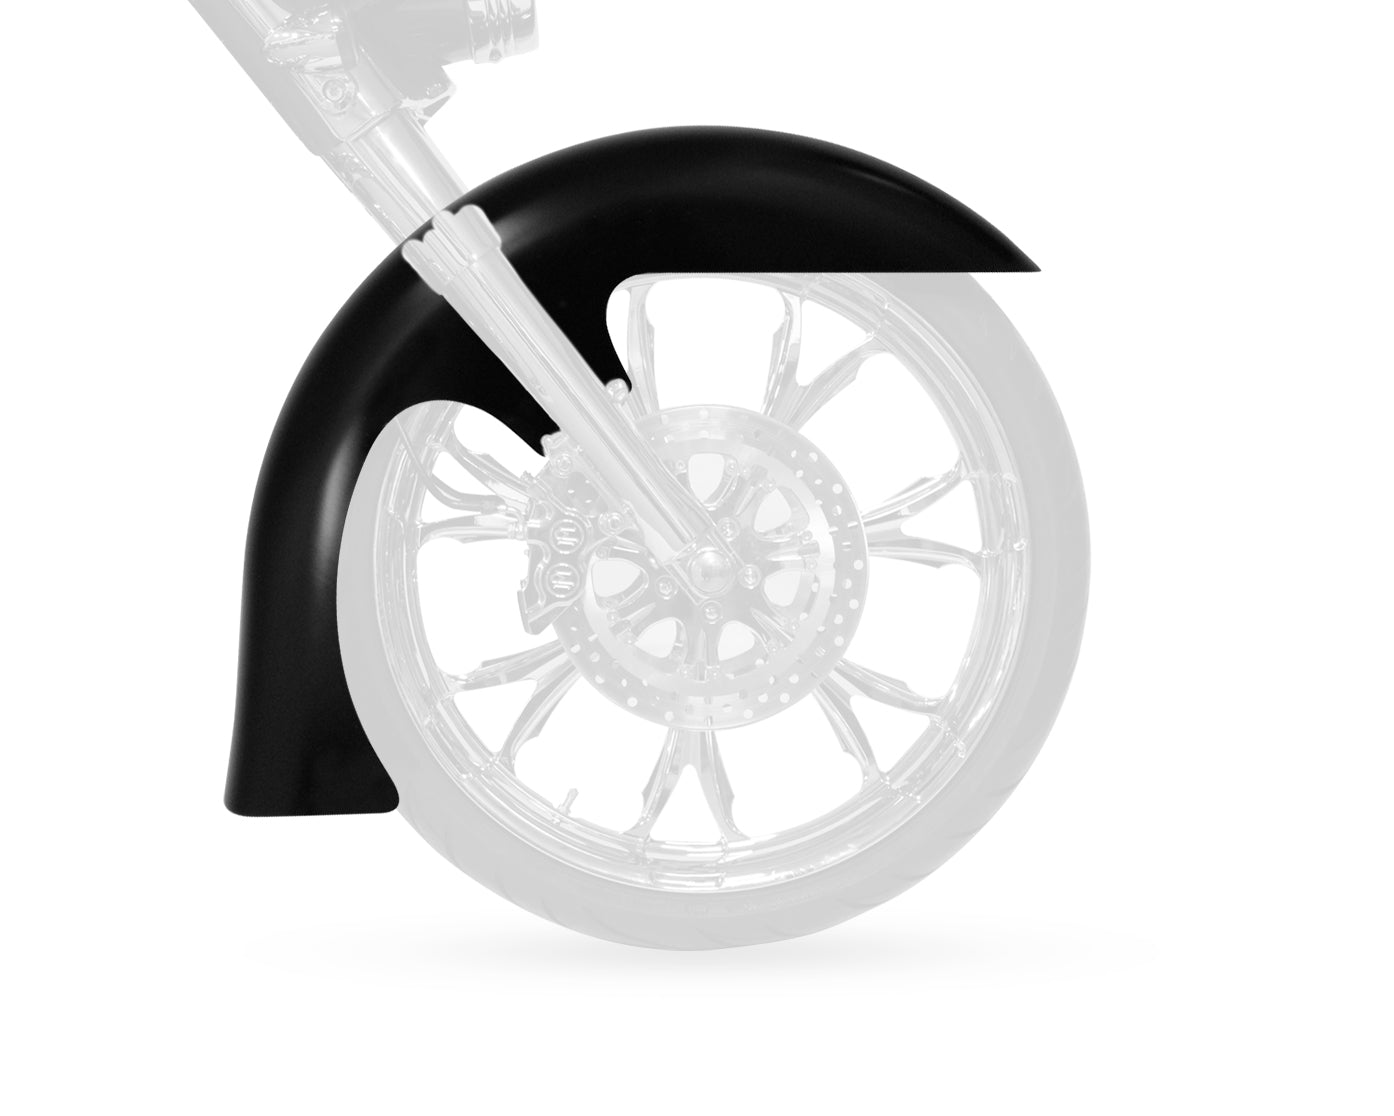 Level Big Wheel Front Fender FIT KIT for Harley-Davidson 2014-2016 Touring Motorcycle Models(Level)